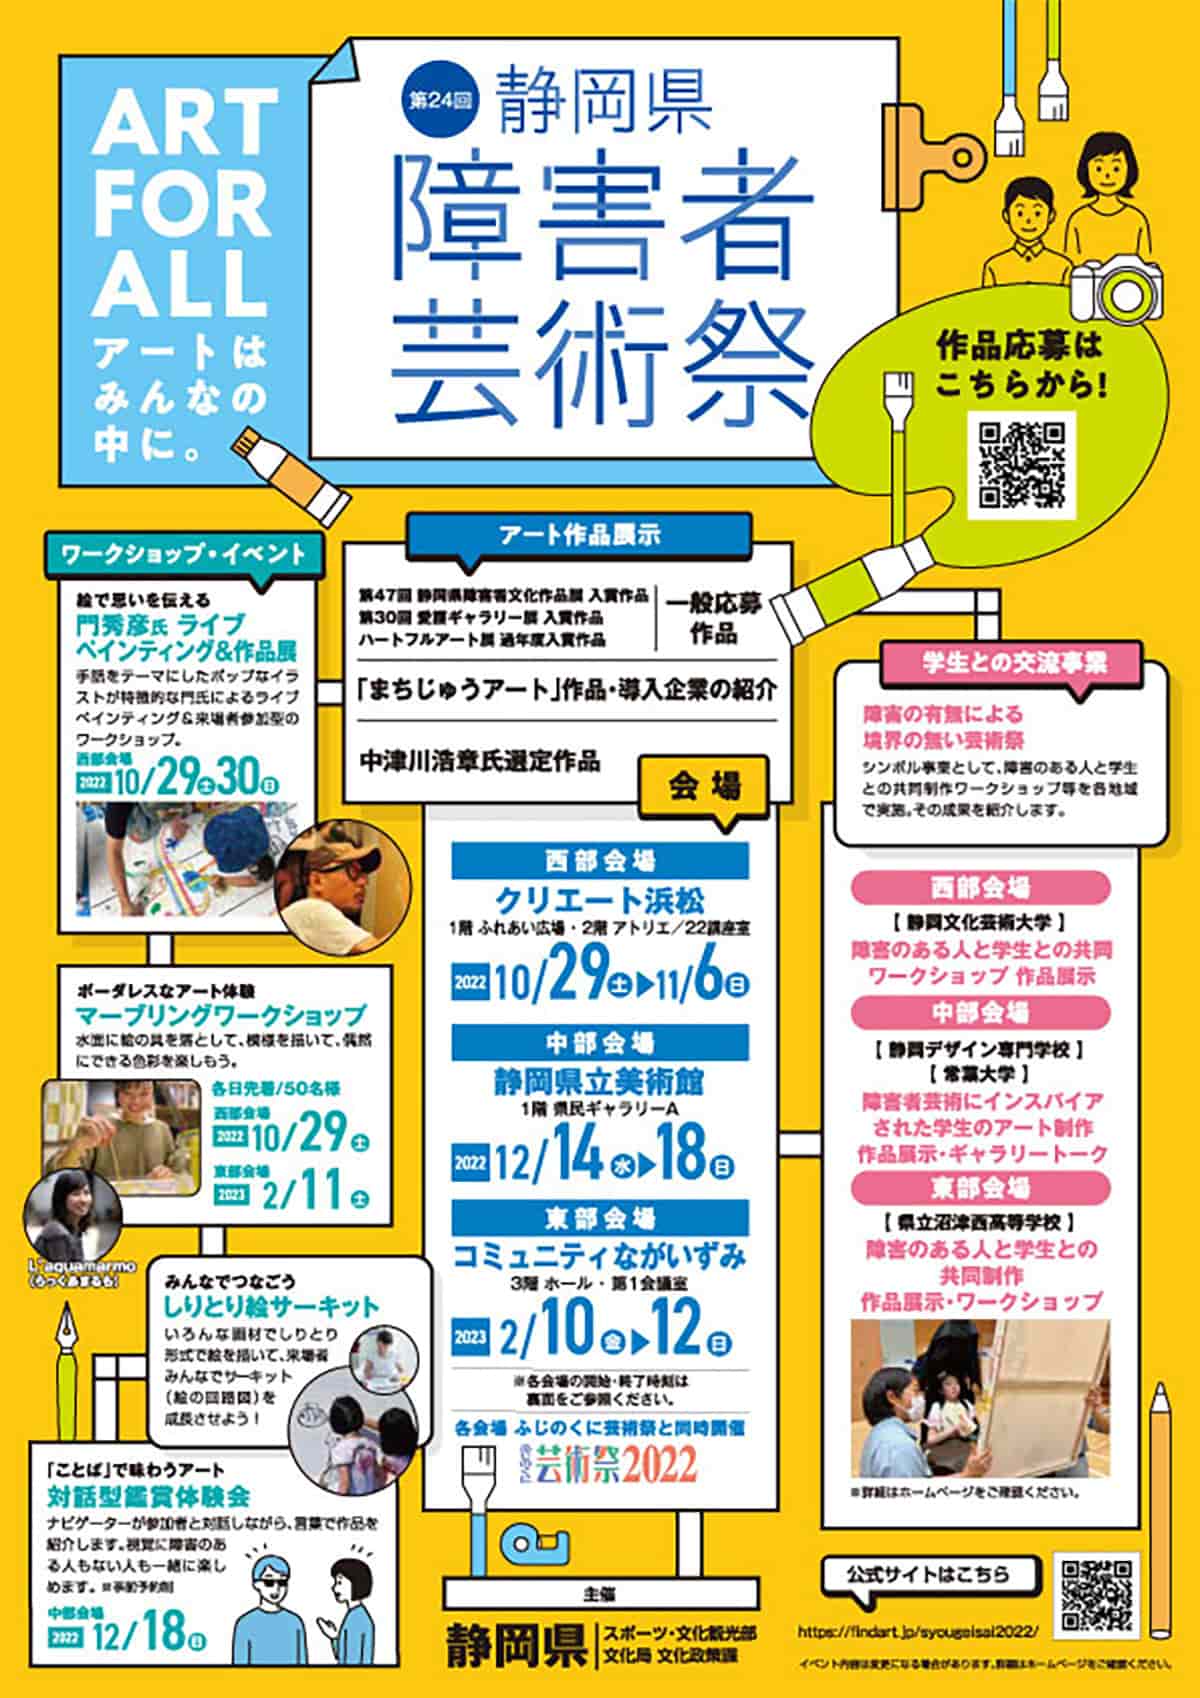 静岡県障害者芸術祭フライヤー